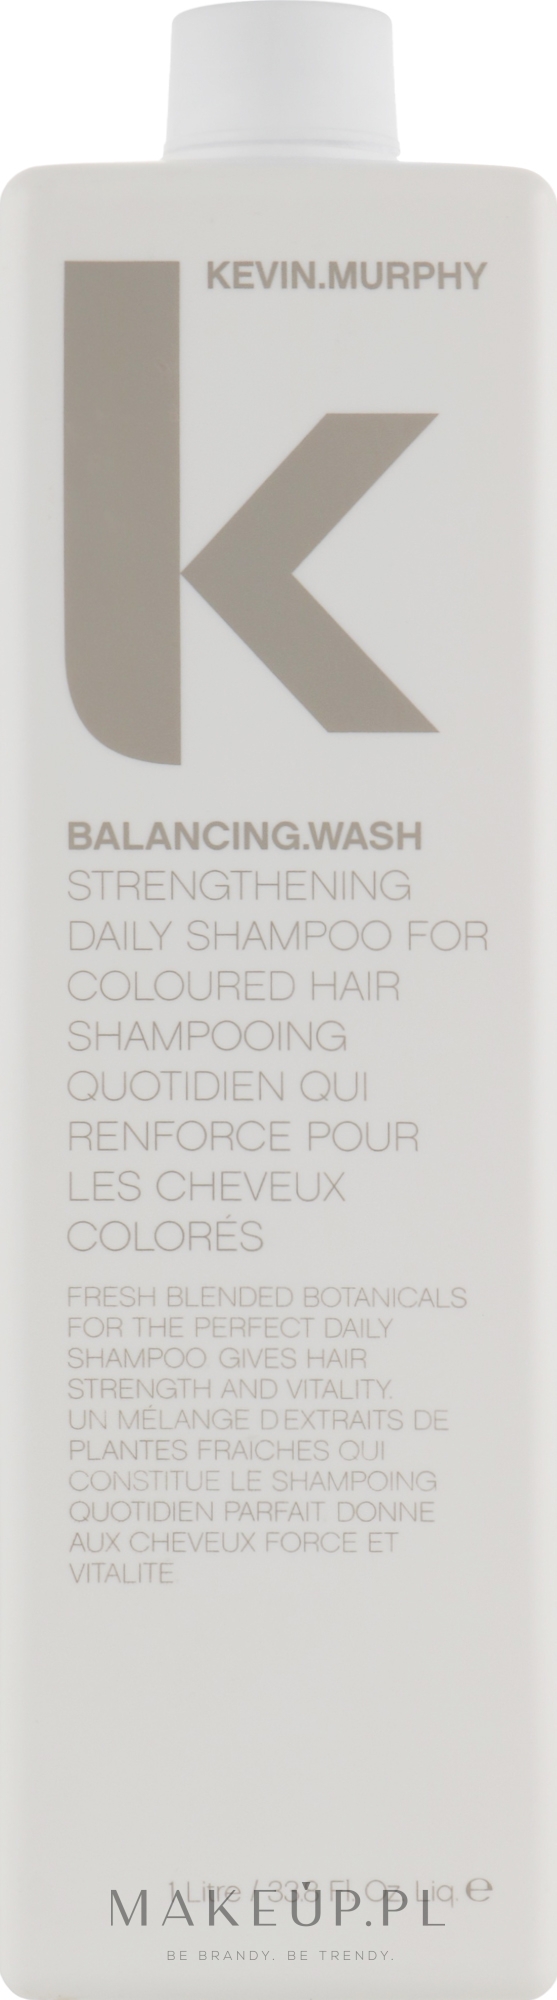 Wzmacniający szampon do włosów farbowanych - Kevin.Murphy Balancing.Wash — Zdjęcie 1000 ml